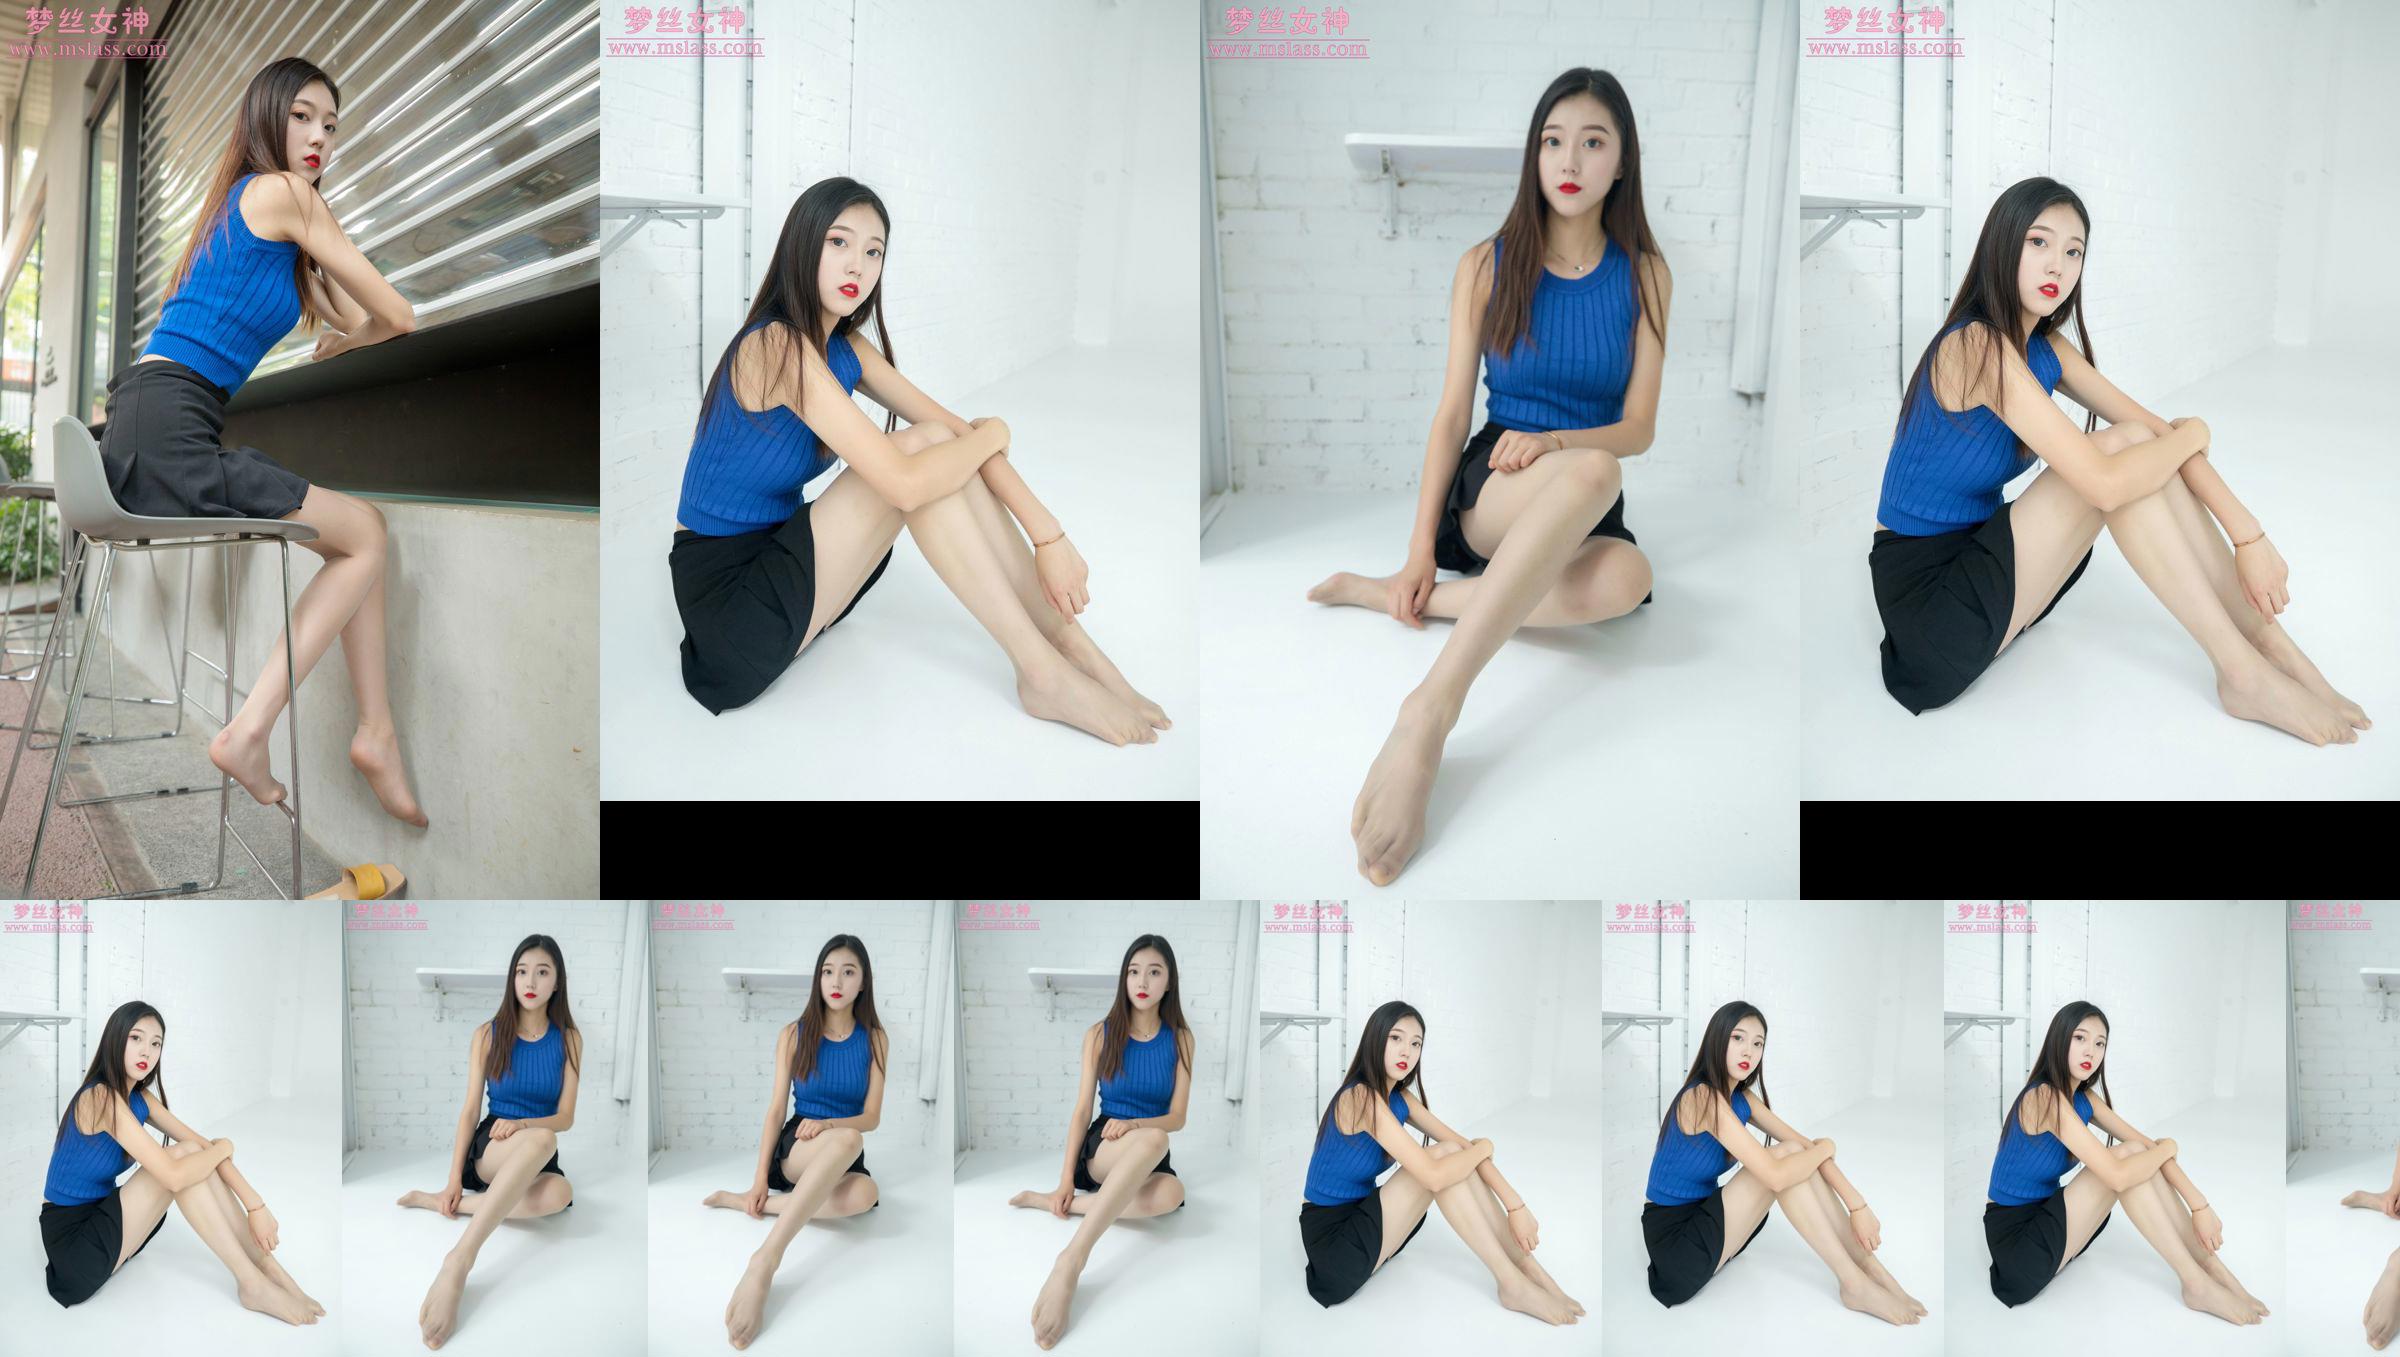 [MSLASS] Shu Lei Art Space Stockings Beautiful Legs No.96ce6c Trang 37